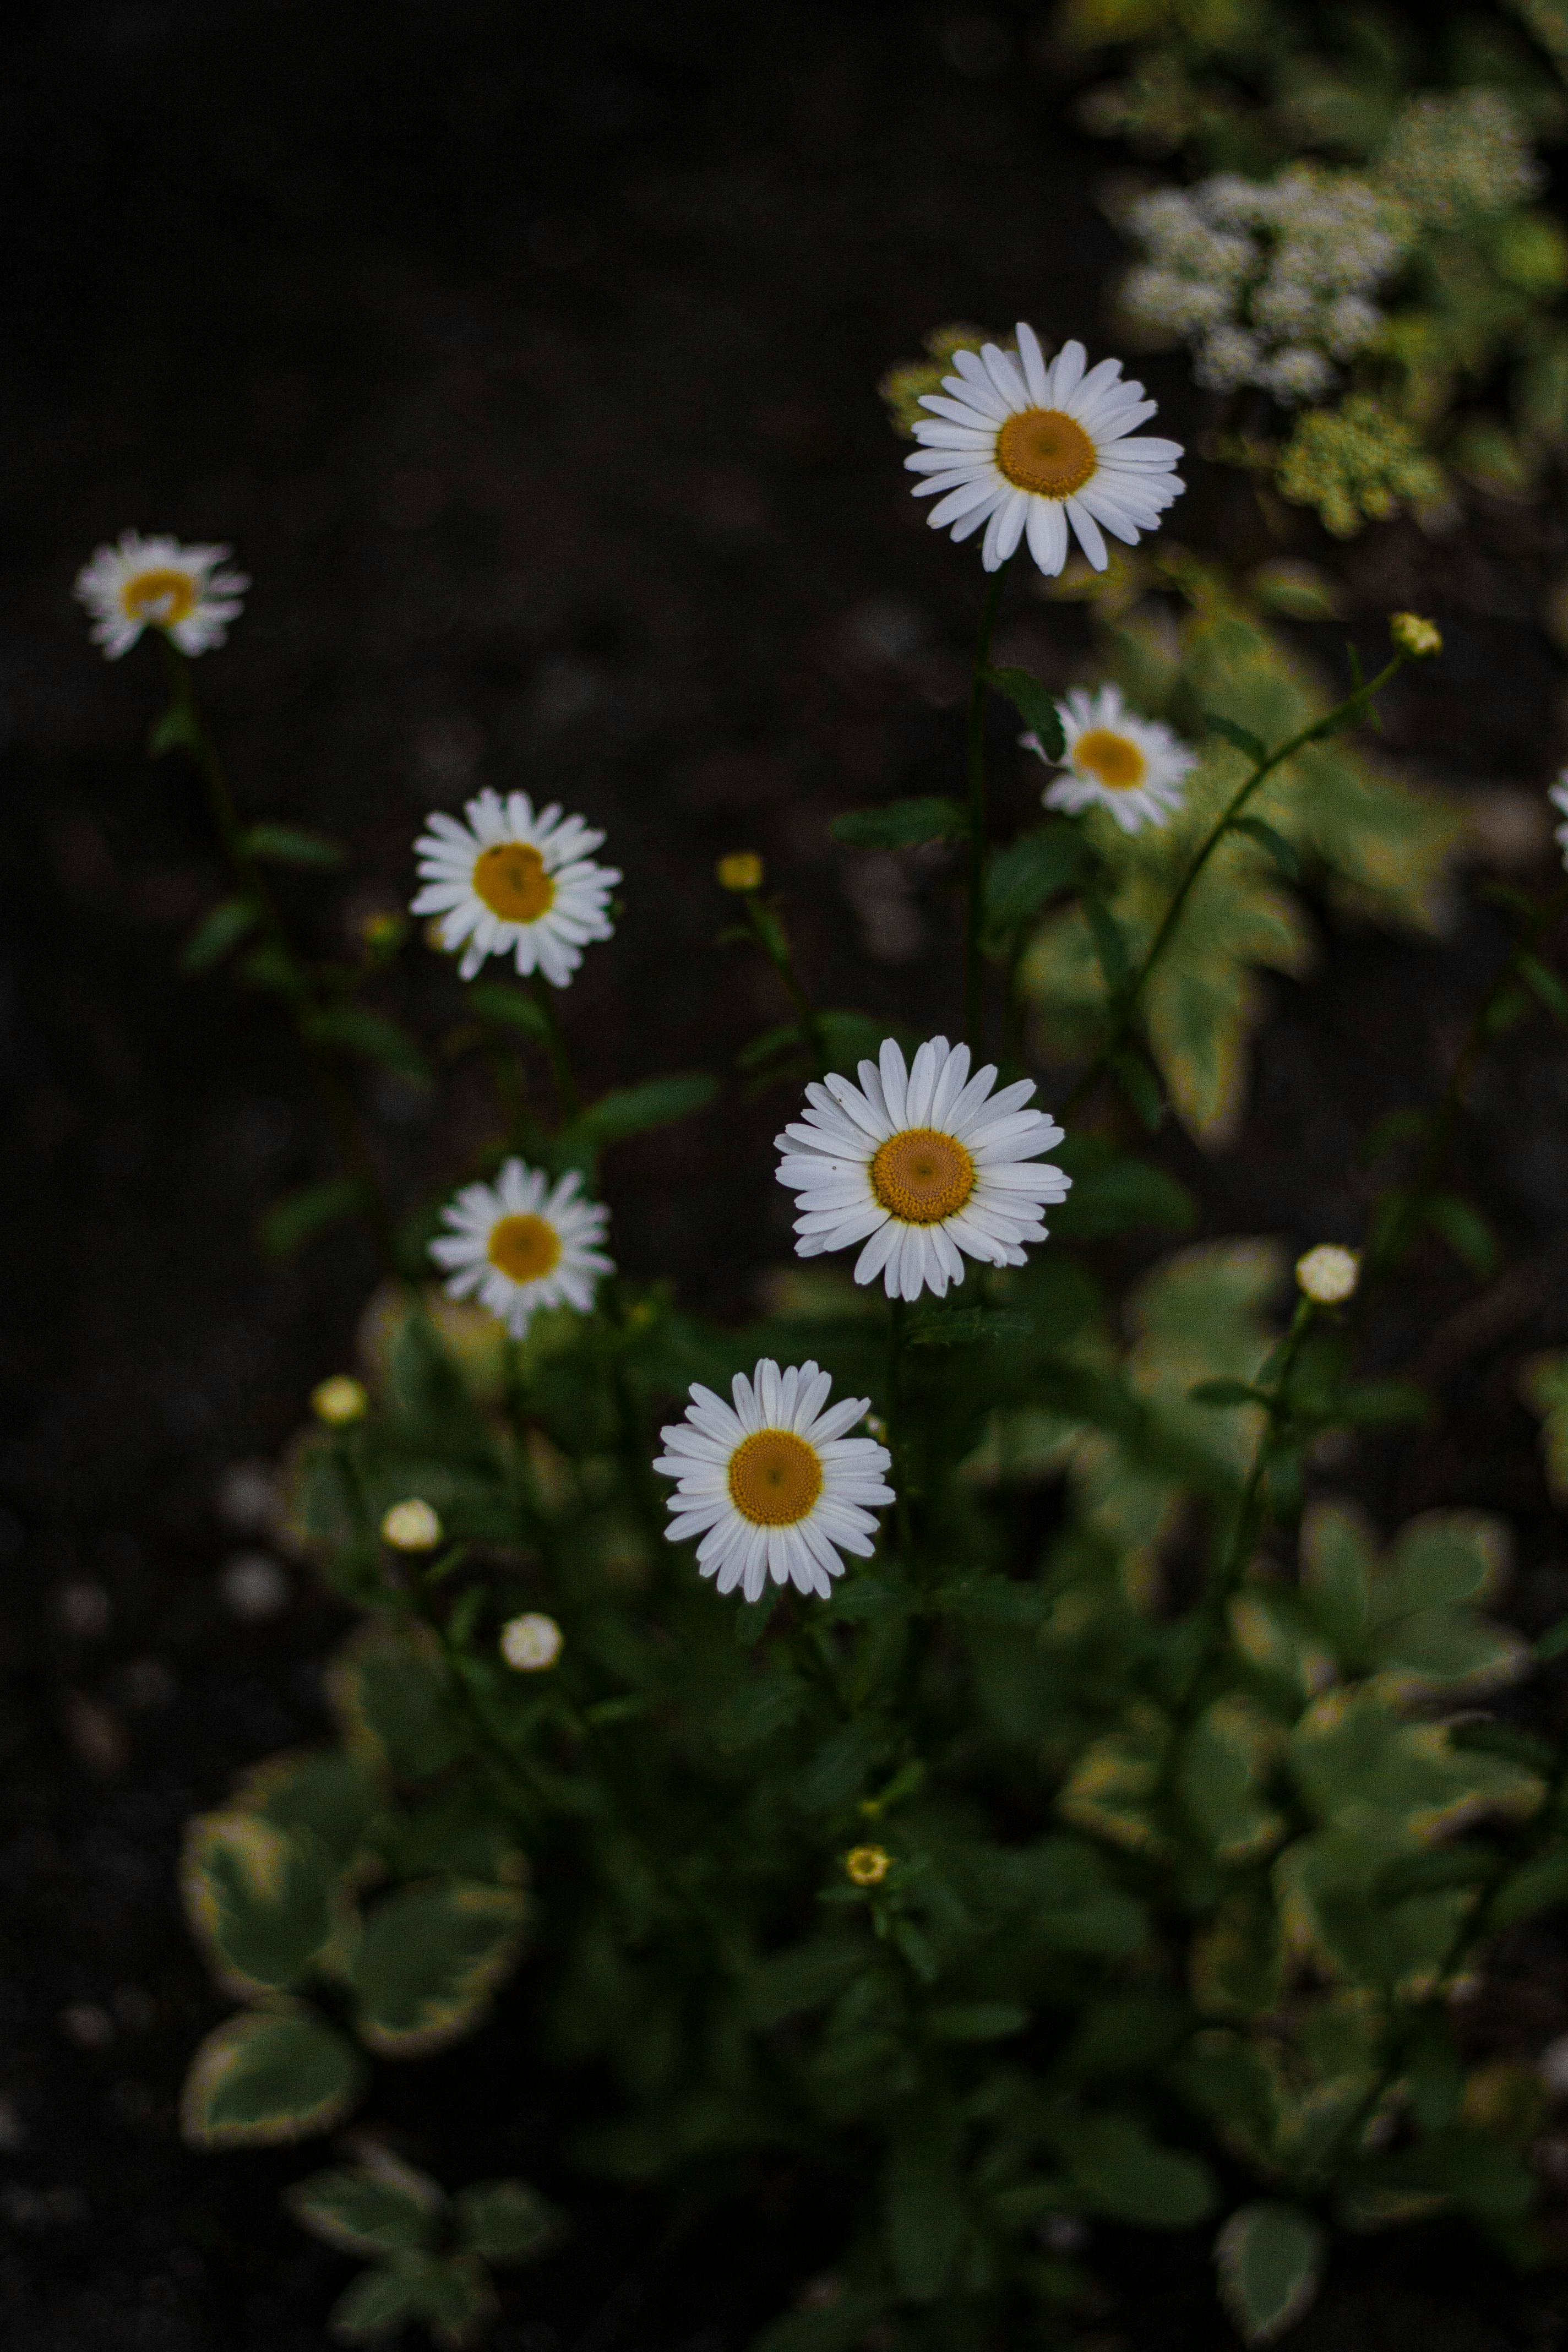 Trang Trí Hoa Và Lá Trắng - Hoa và lá trắng: Một bức ảnh trang trí hoa và lá trắng sẽ đưa bạn vào một không gian tươi mới và thanh khiết. Với sự xen kẽ của các đoá hoa và lá trắng, bạn sẽ cảm nhận được sự thanh lọc và tinh tế của thiết kế. Hãy cùng khám phá hình ảnh này để trải nghiệm những giây phút tuyệt vời.